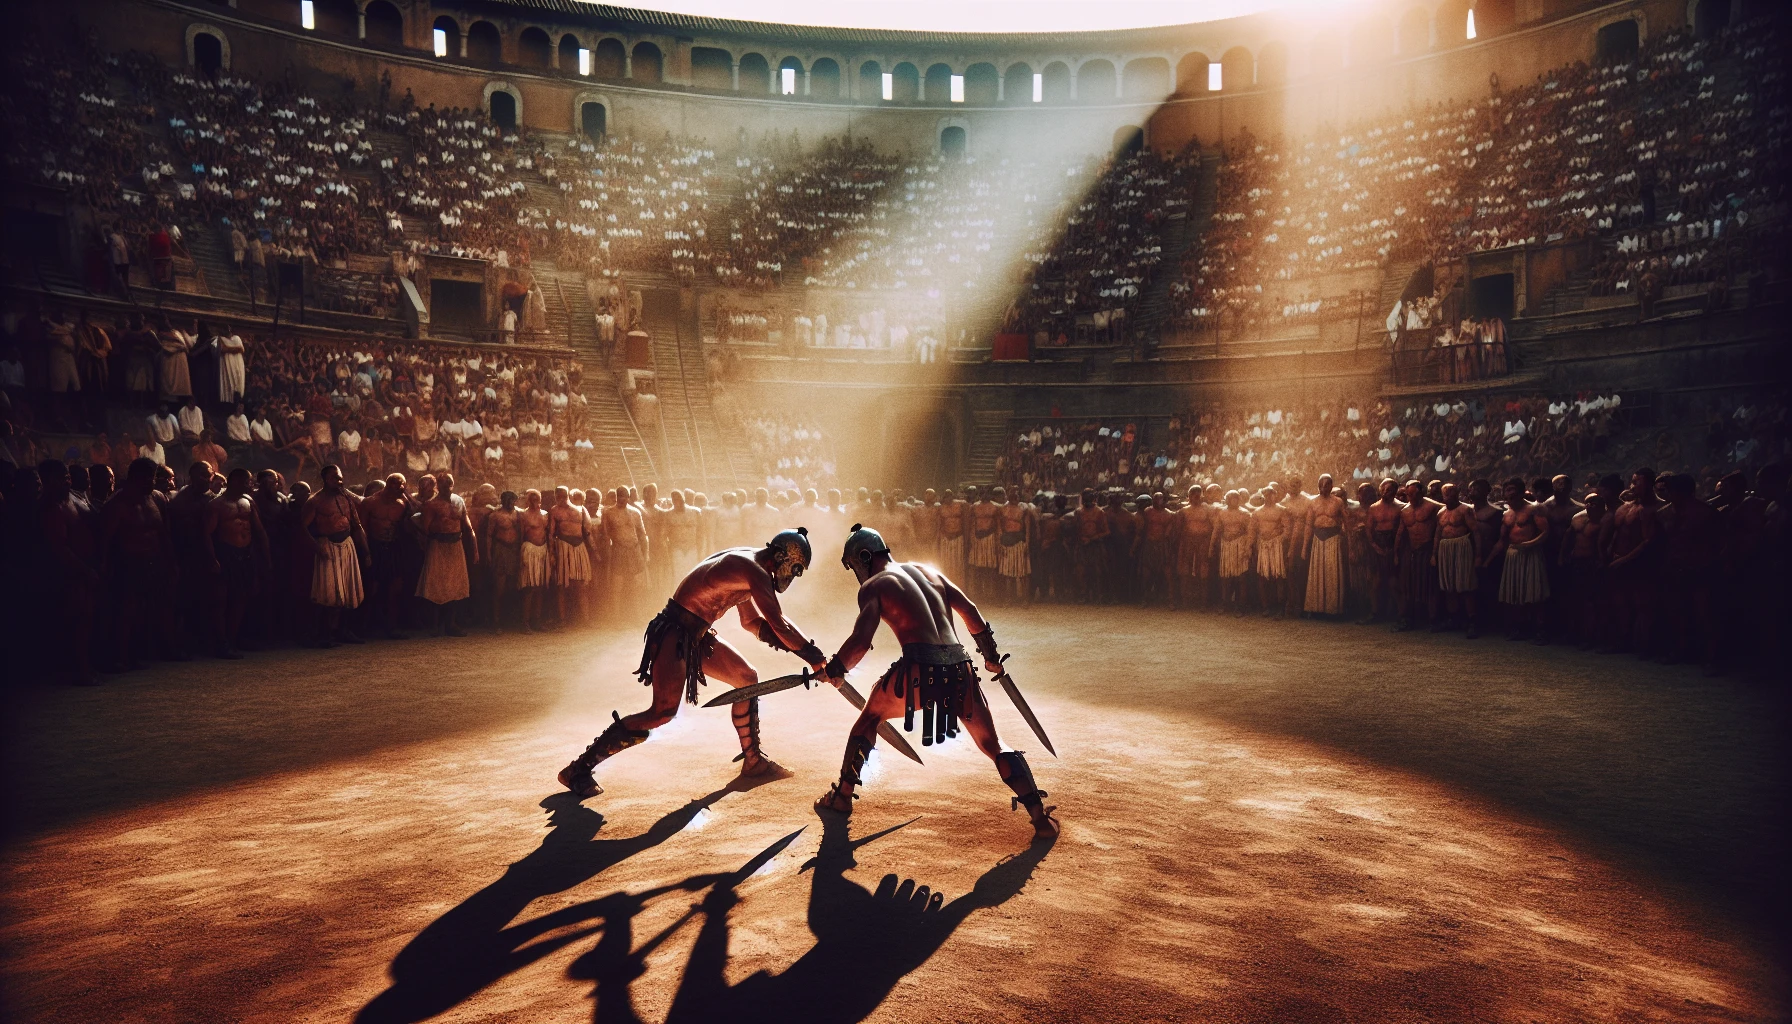 Gladiator fights at Circus Maximus